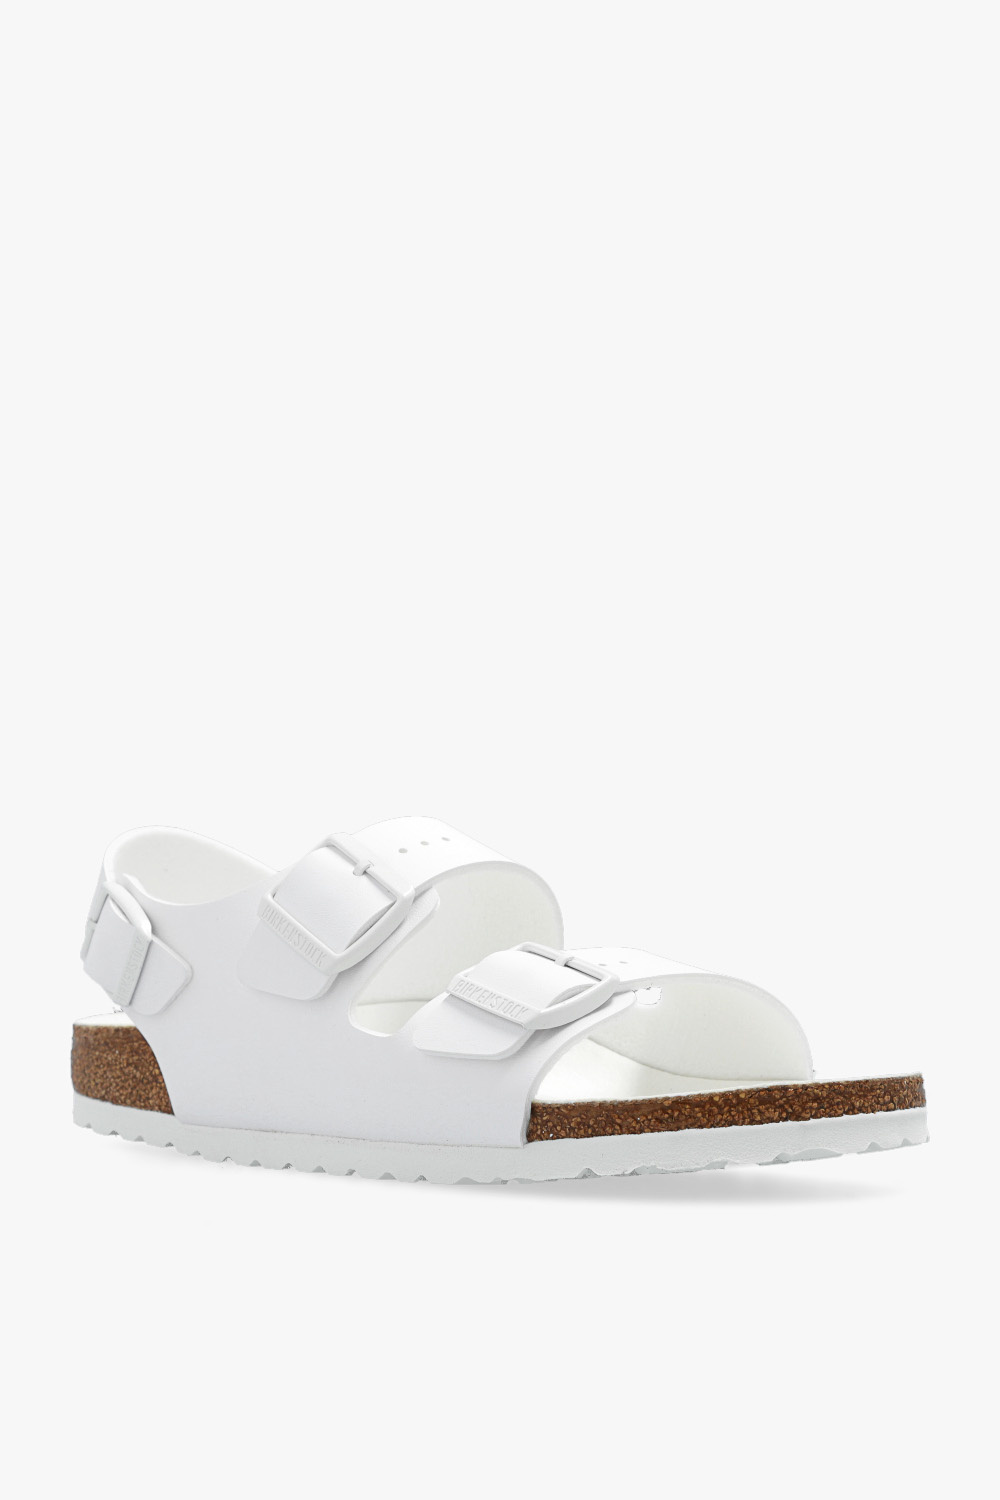 Birkenstock ‘Milano’ sandals